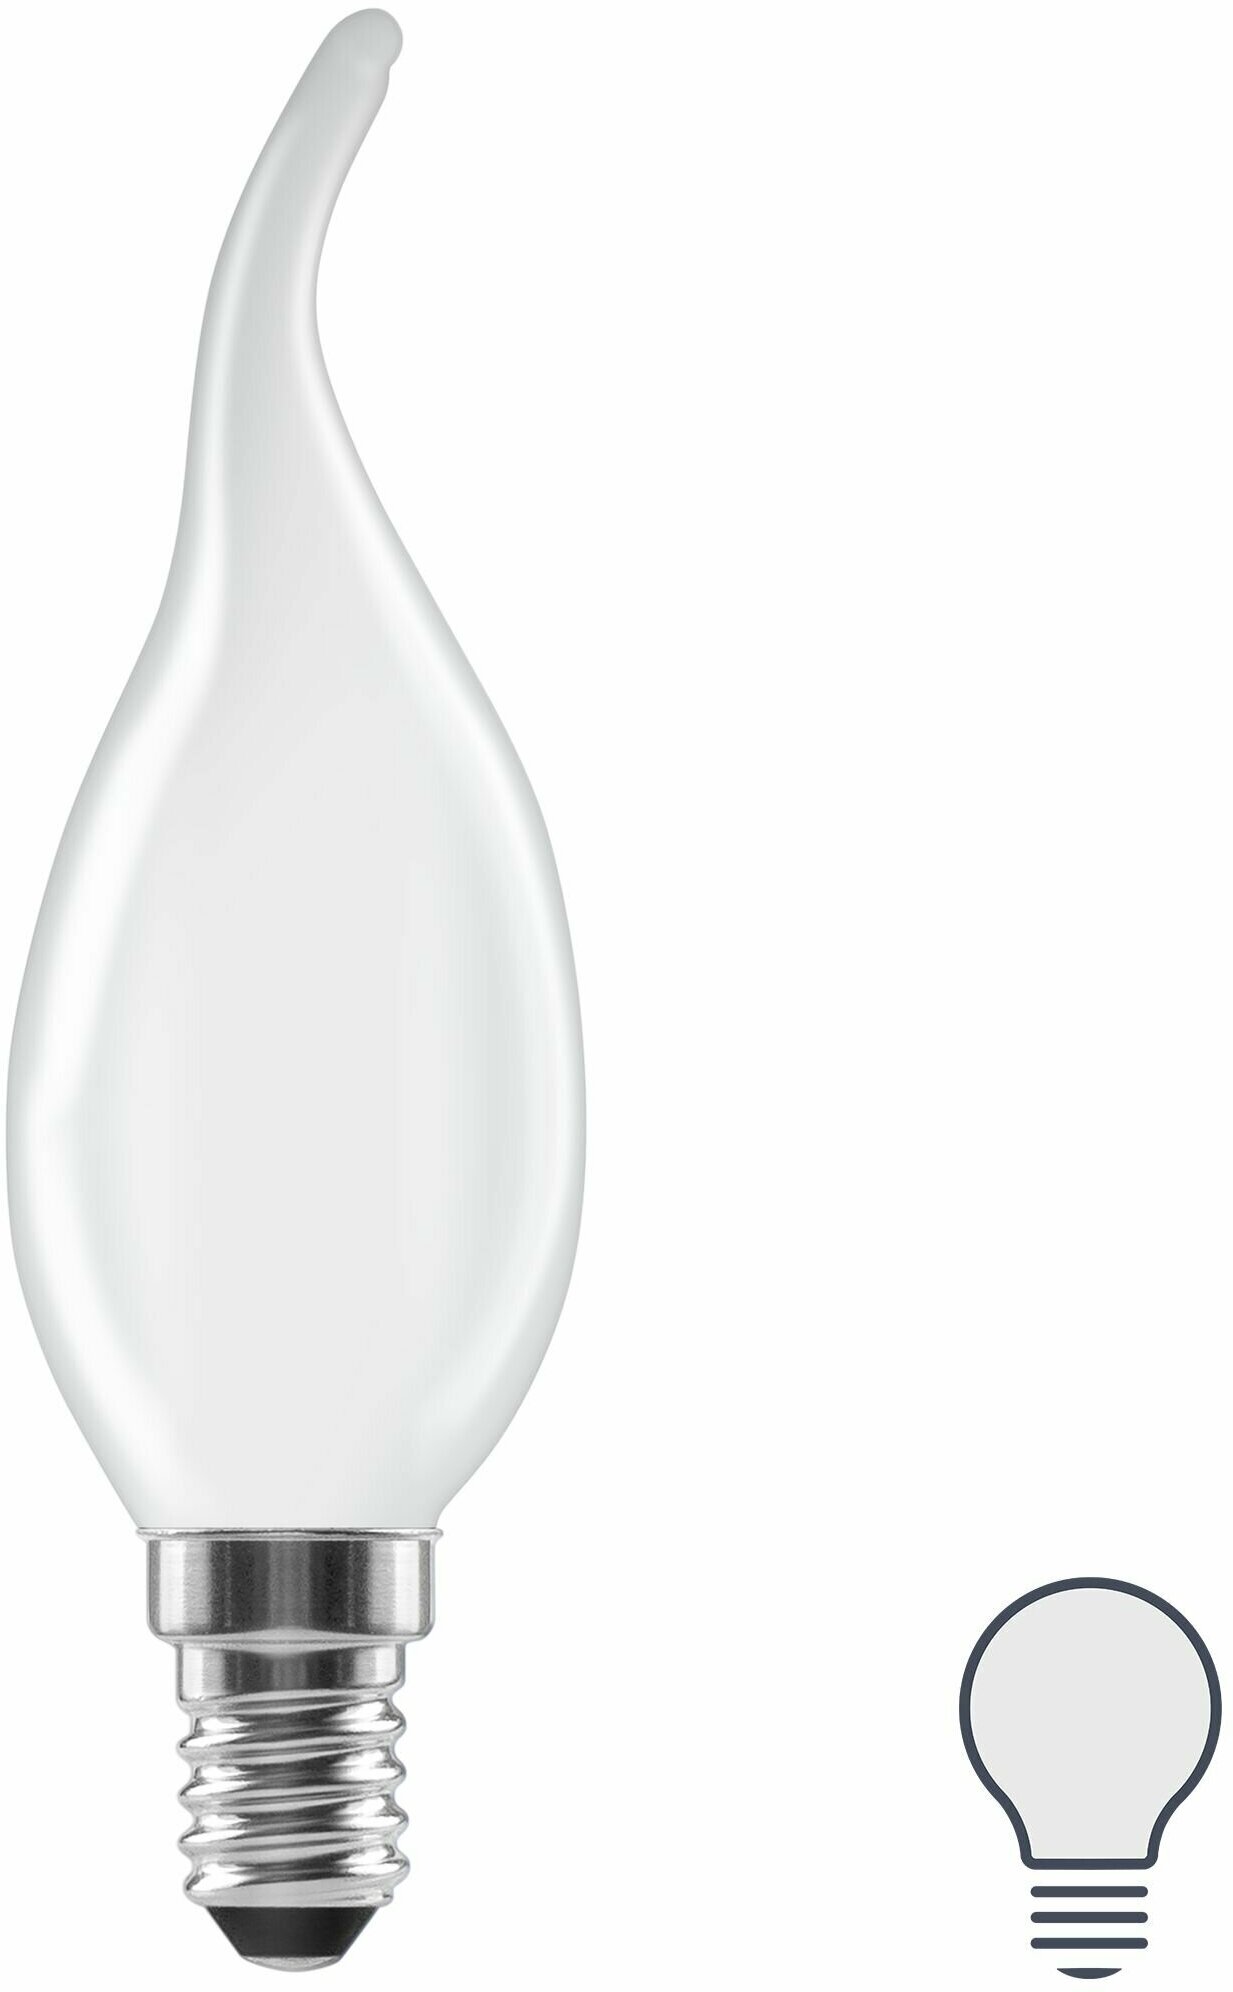 Лампа светодиодная Lexman E14 220-240 В 5 Вт свеча на ветру матовая 600 лм нейтральный белый свет